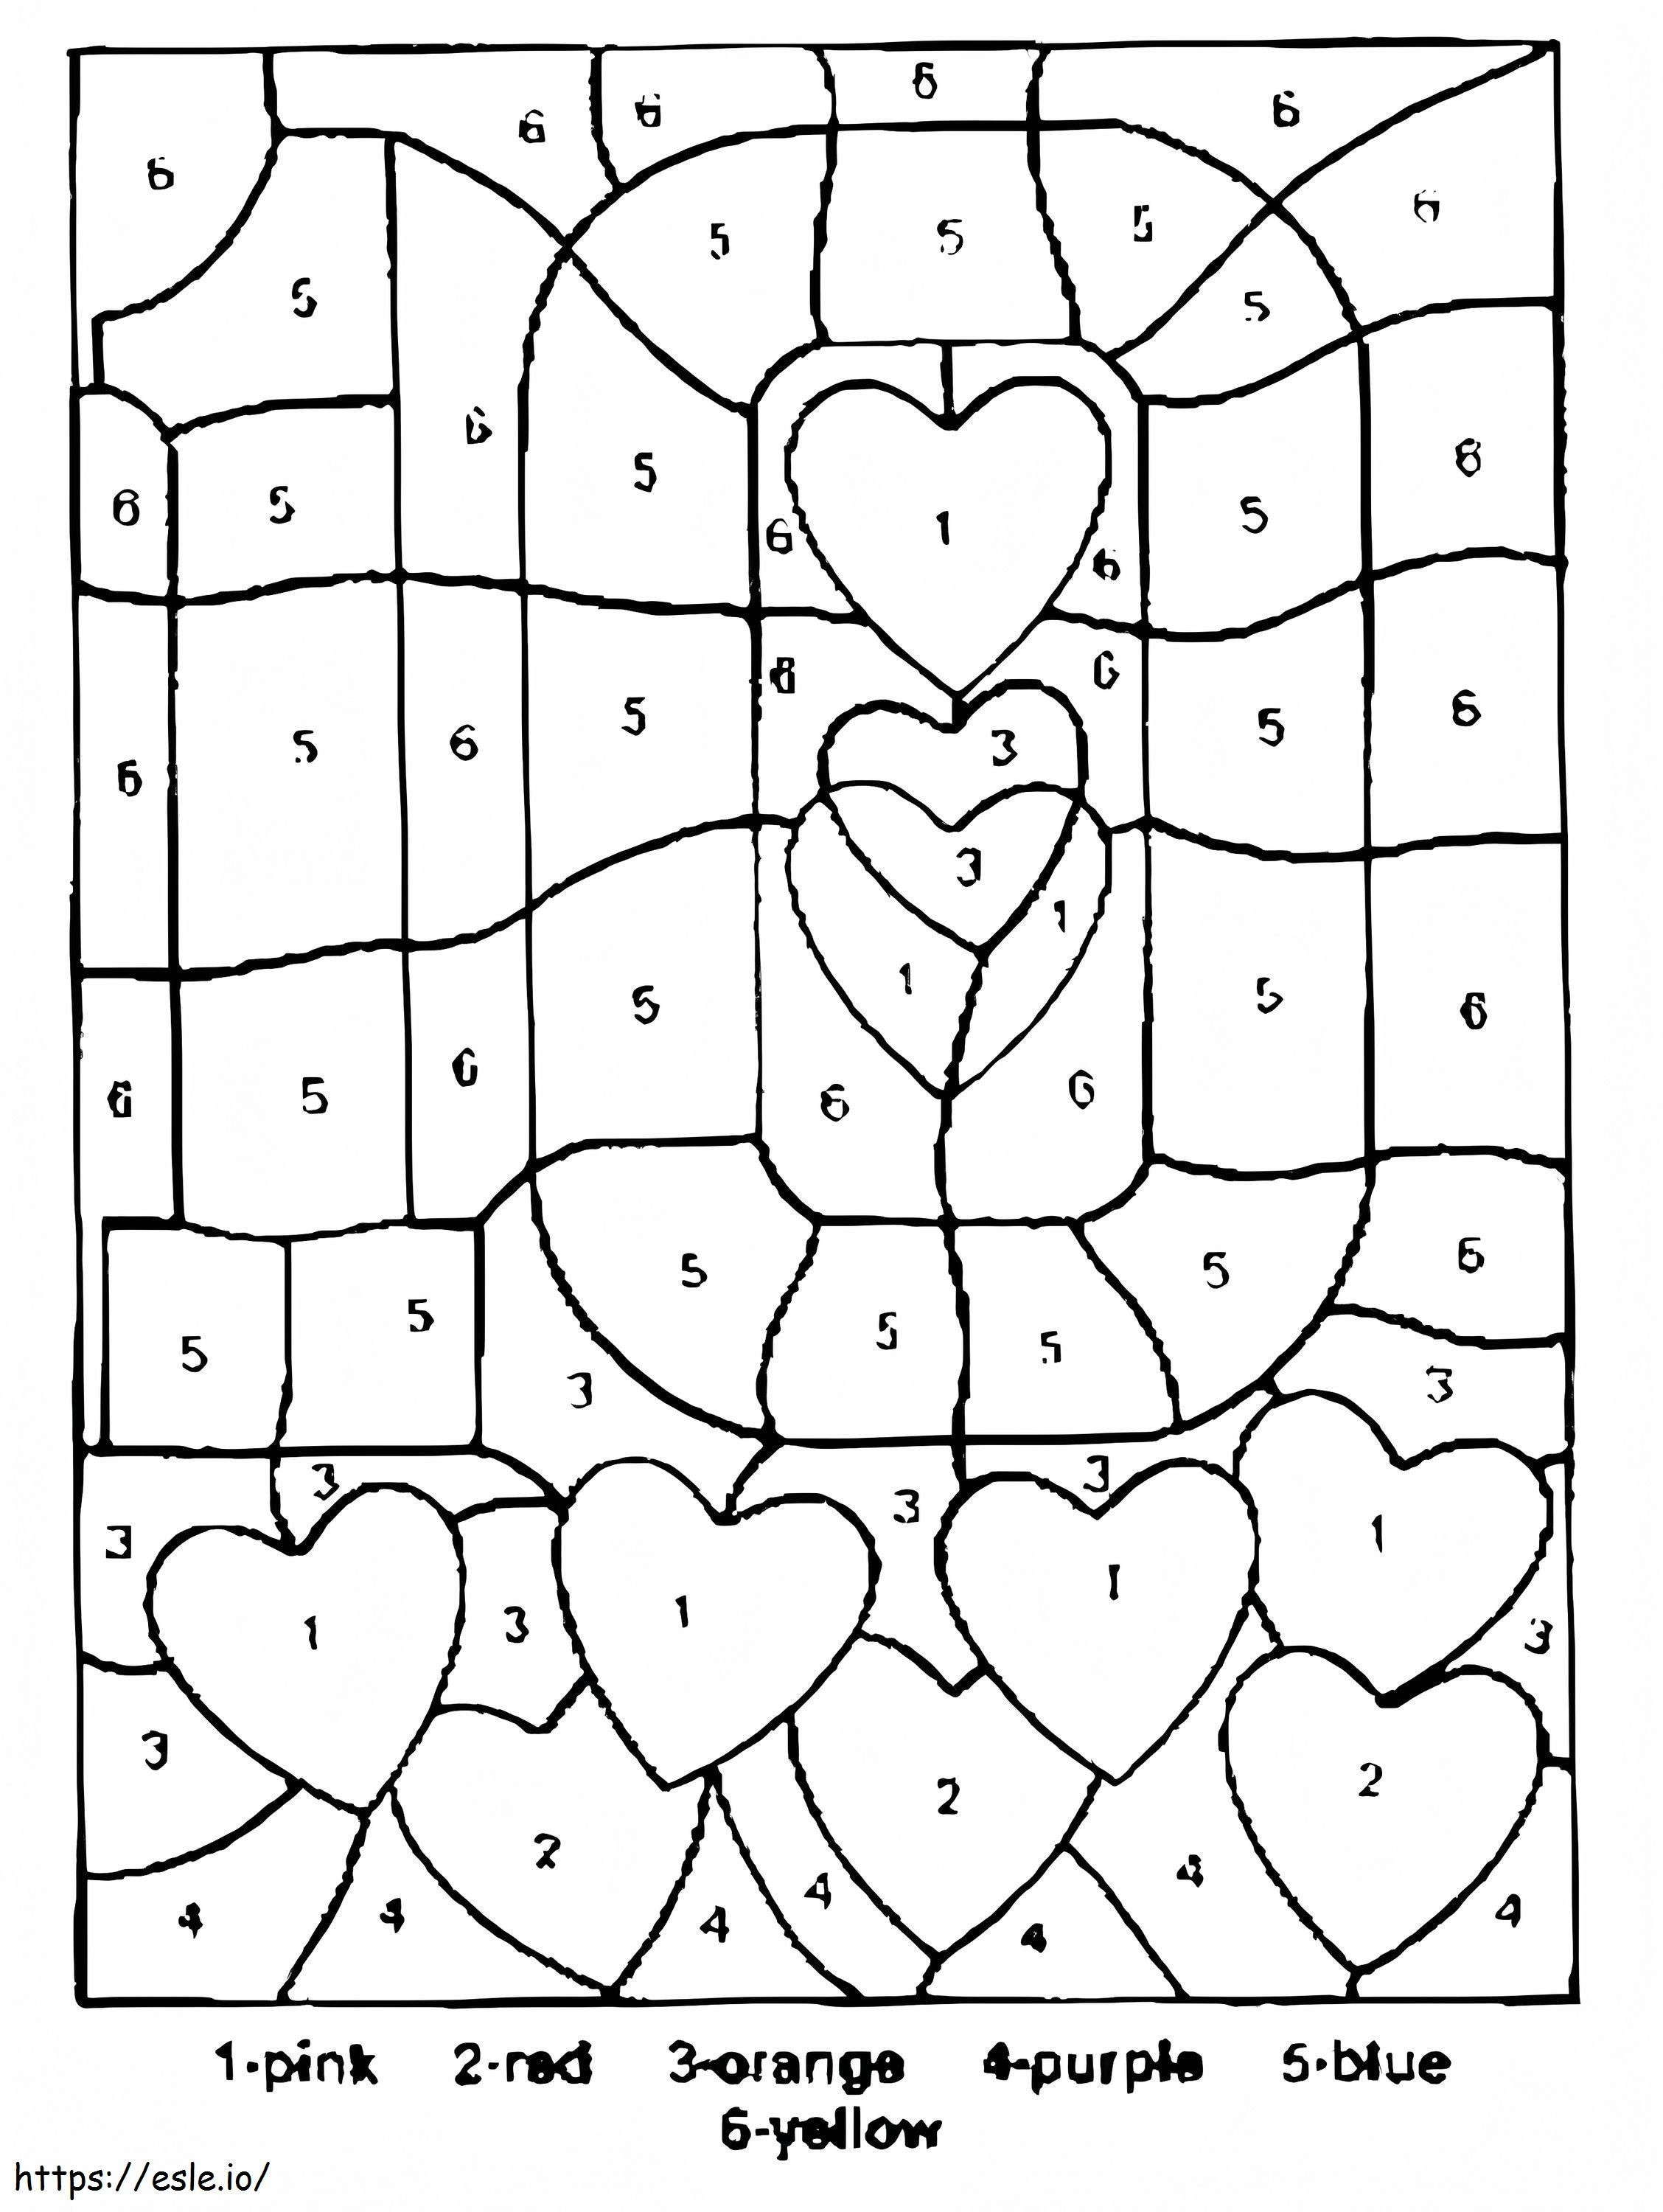 Planilha de cores de corações de namorados por número para colorir